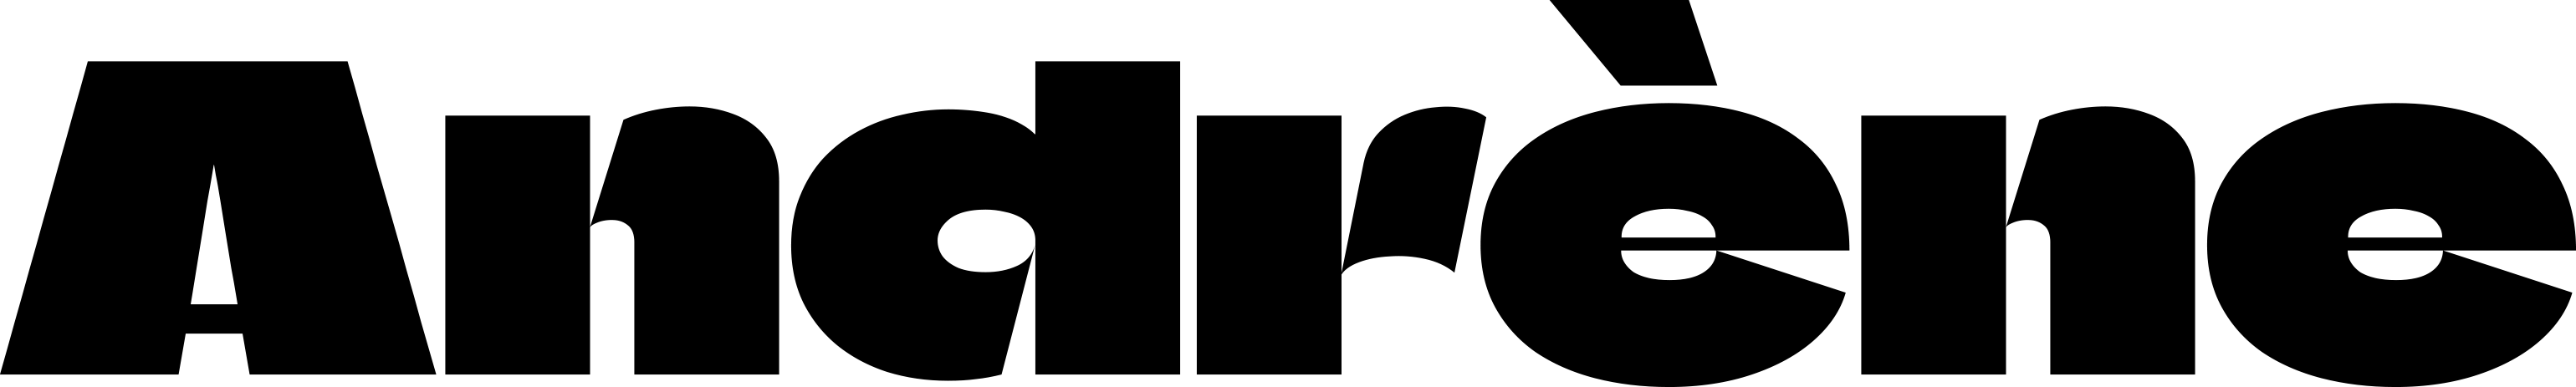 logo-andrene-noir